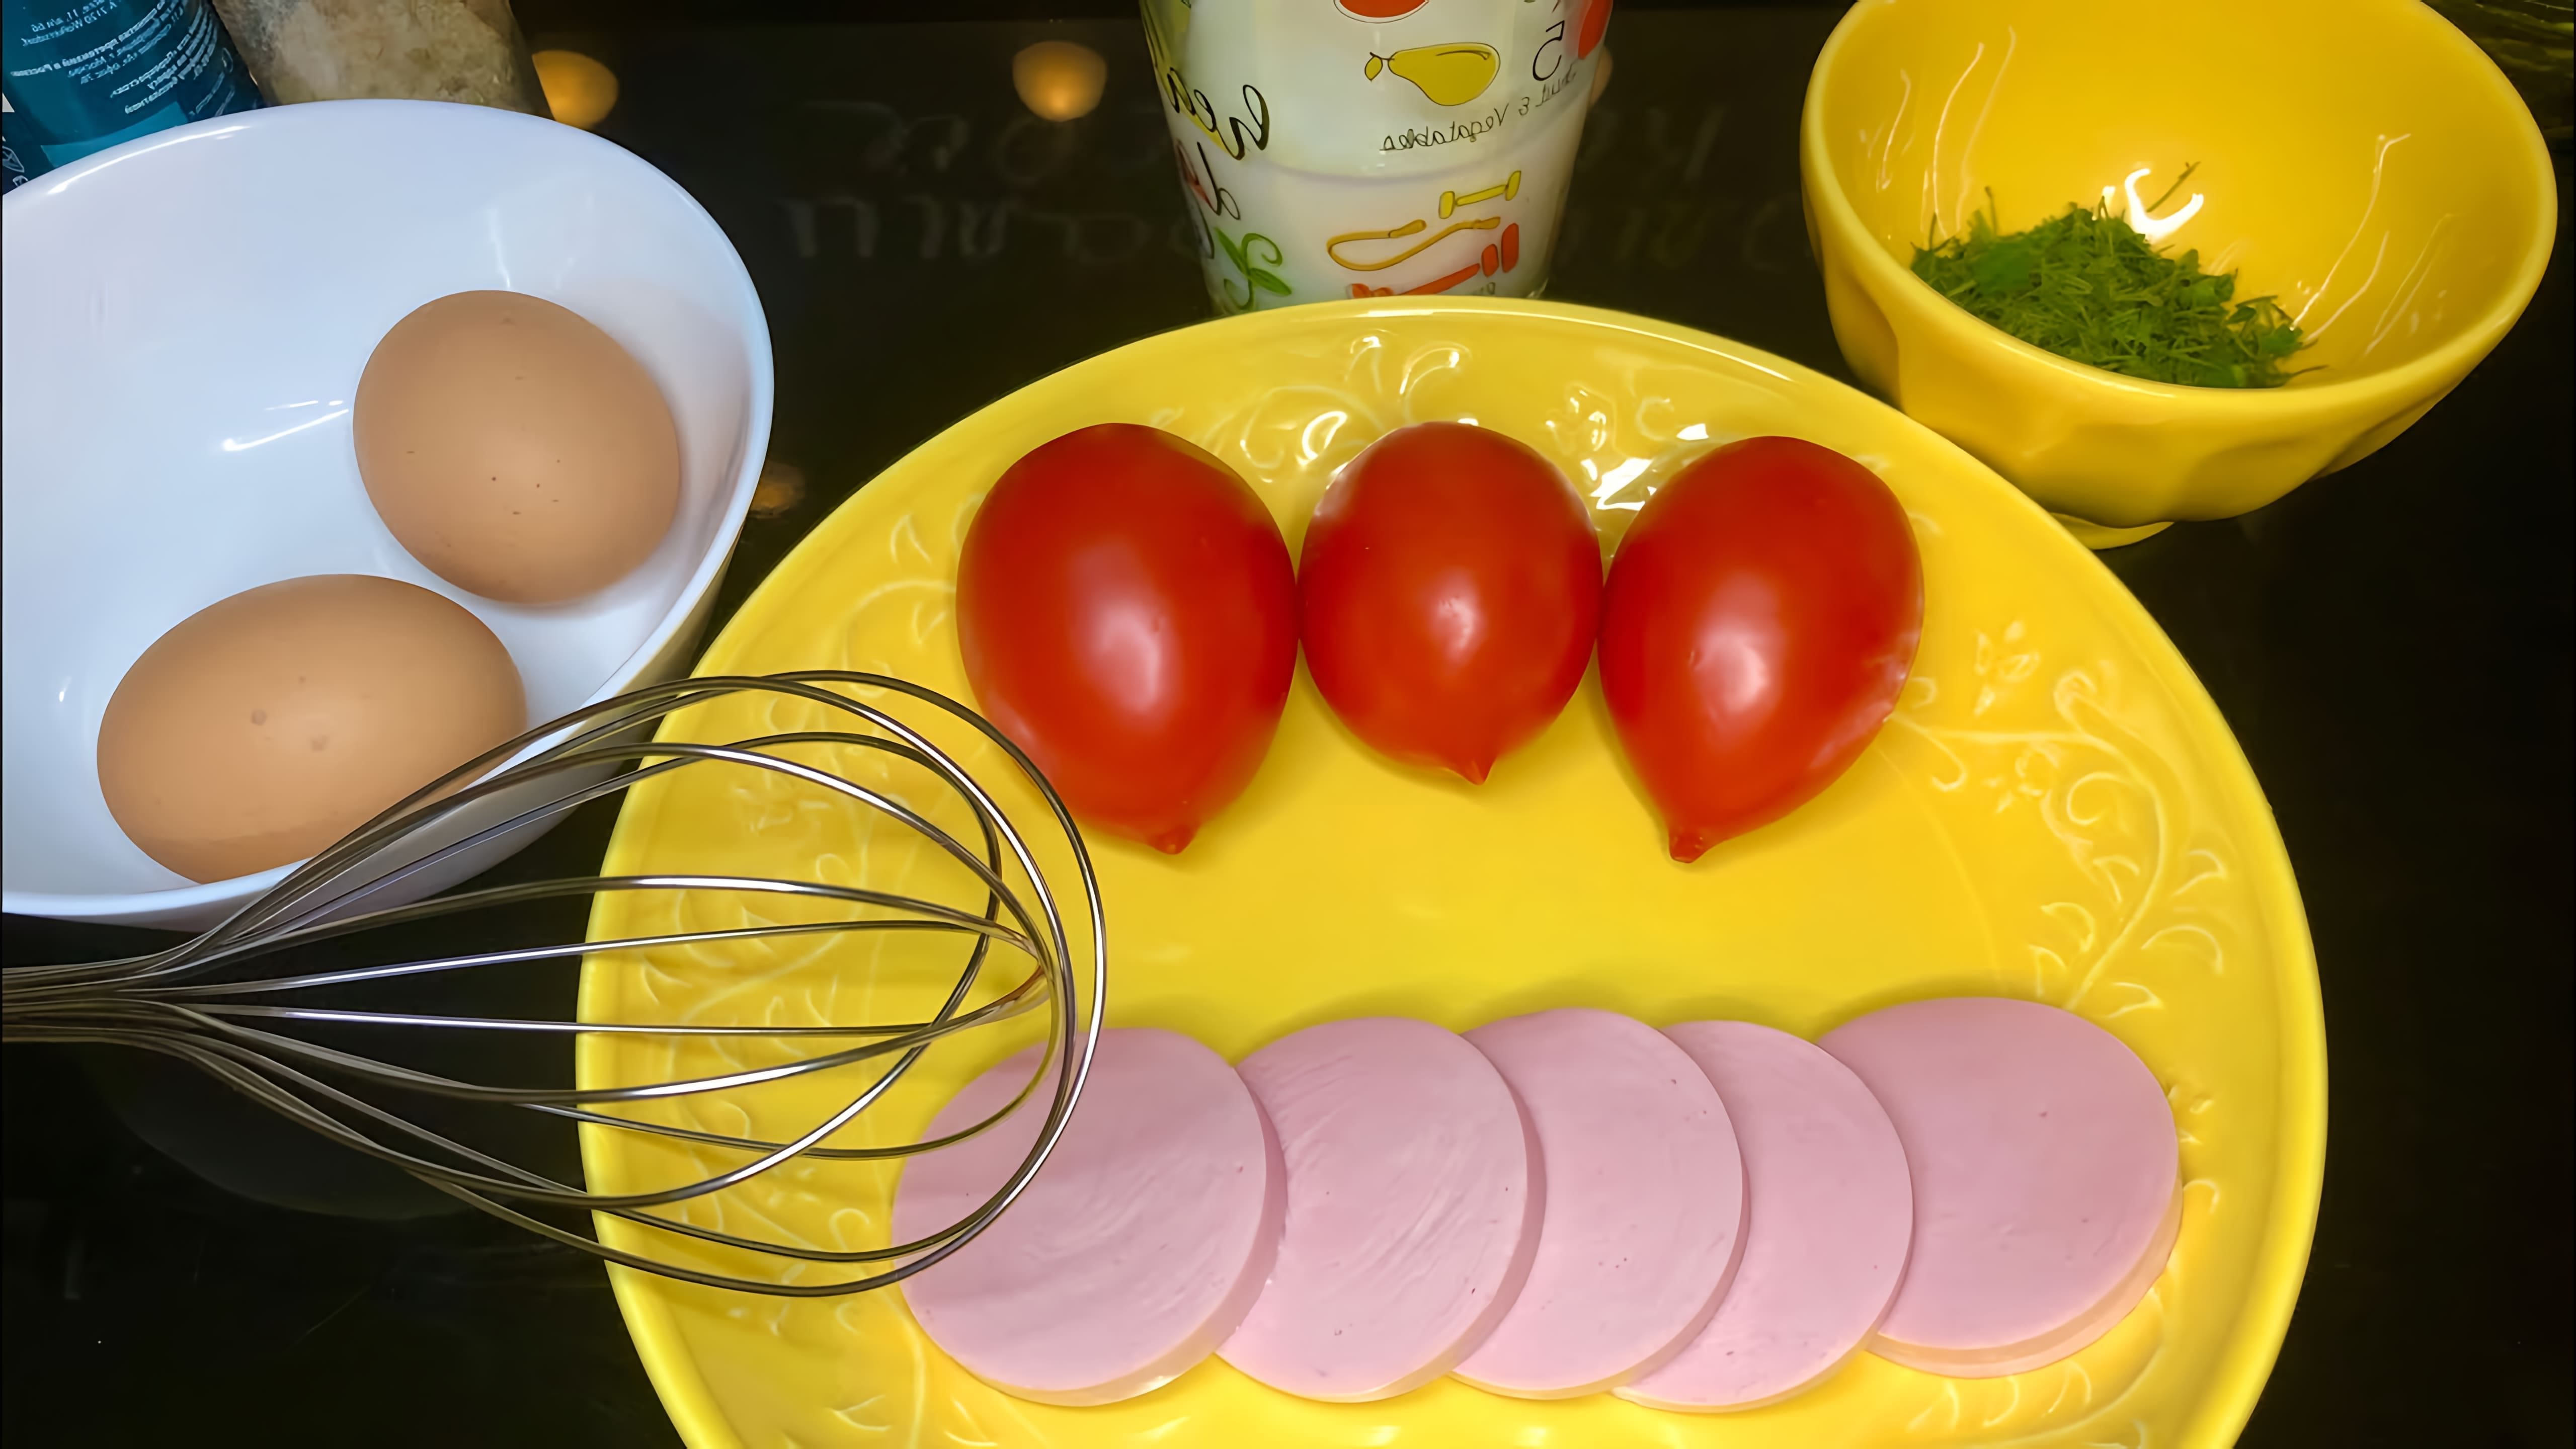 В этом видео демонстрируется процесс приготовления омлета с колбасой и помидорами